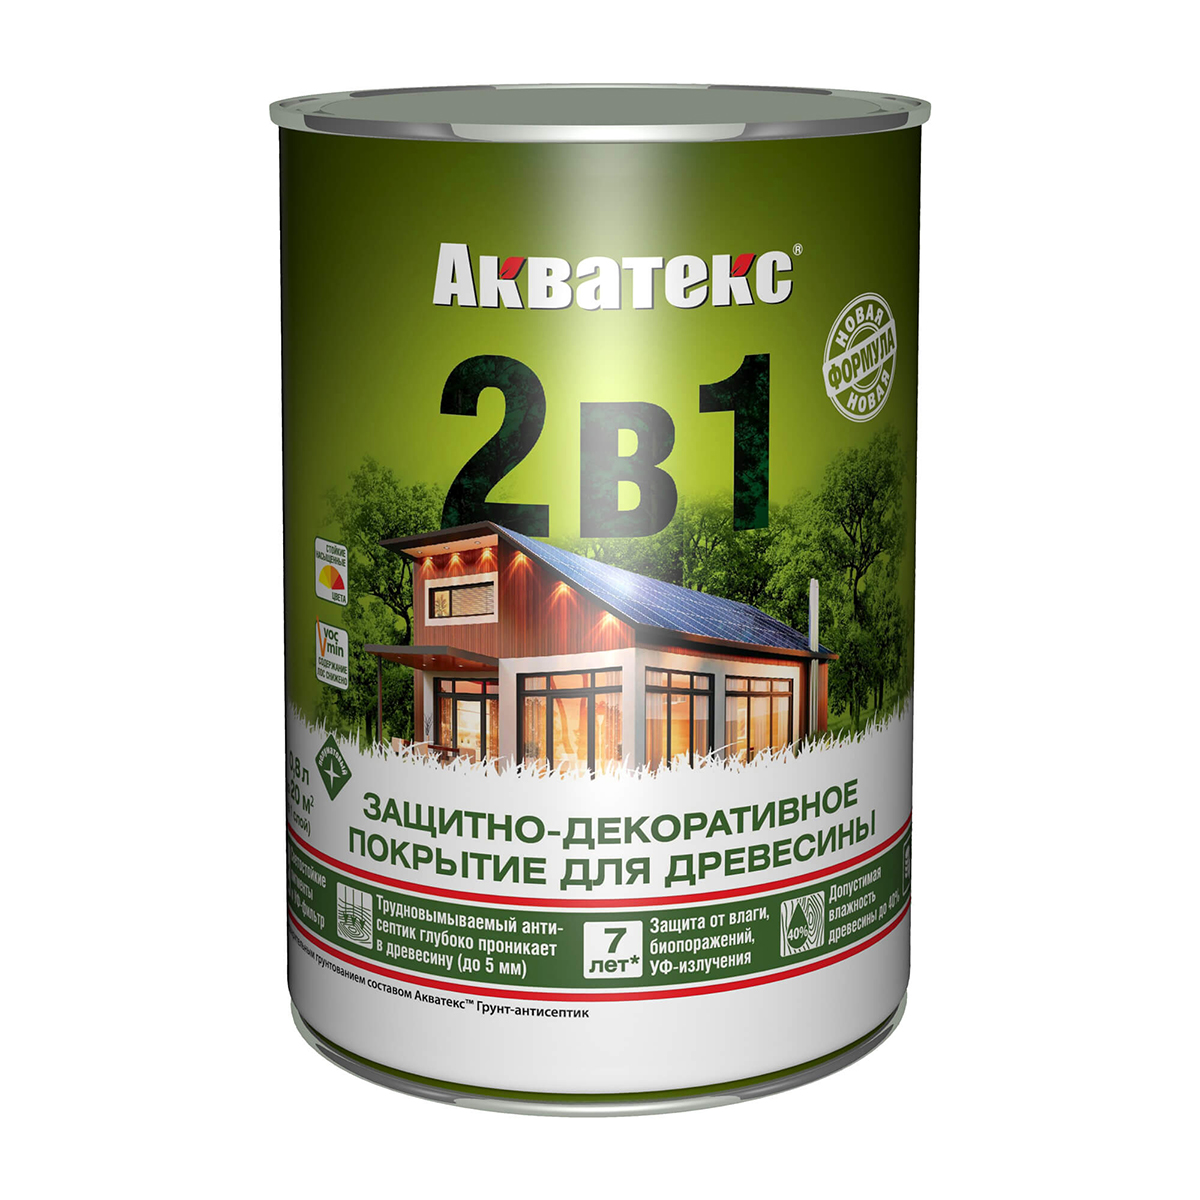 Защитно-декоративное покрытие для дерева Акватекс 2 в 1, полуматовое, 0,8 л, ваниль